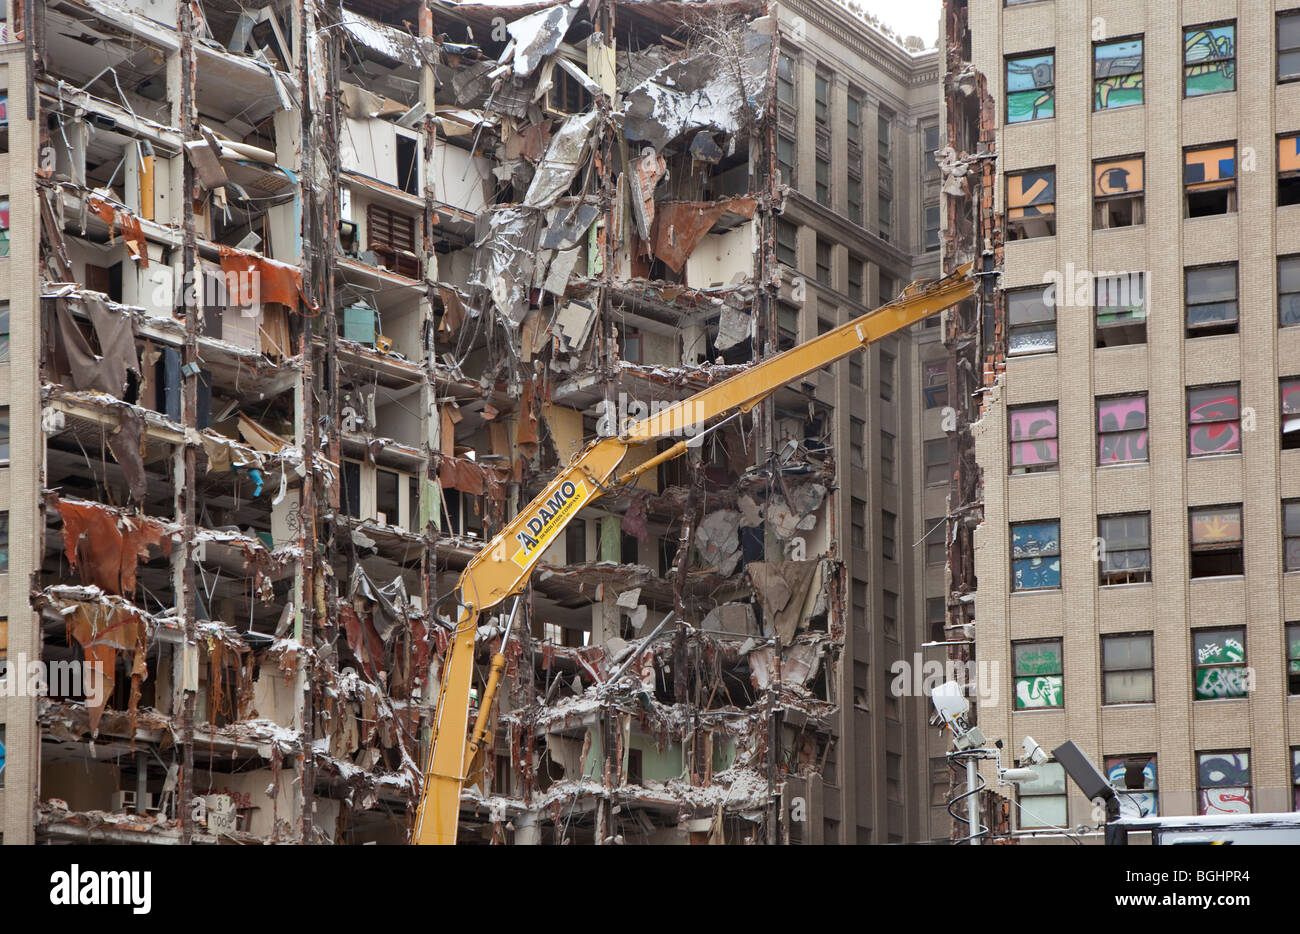 Detroit, Michigan - vacante in Lafayette la costruzione di essere demolita nel centro di Detroit. Foto Stock